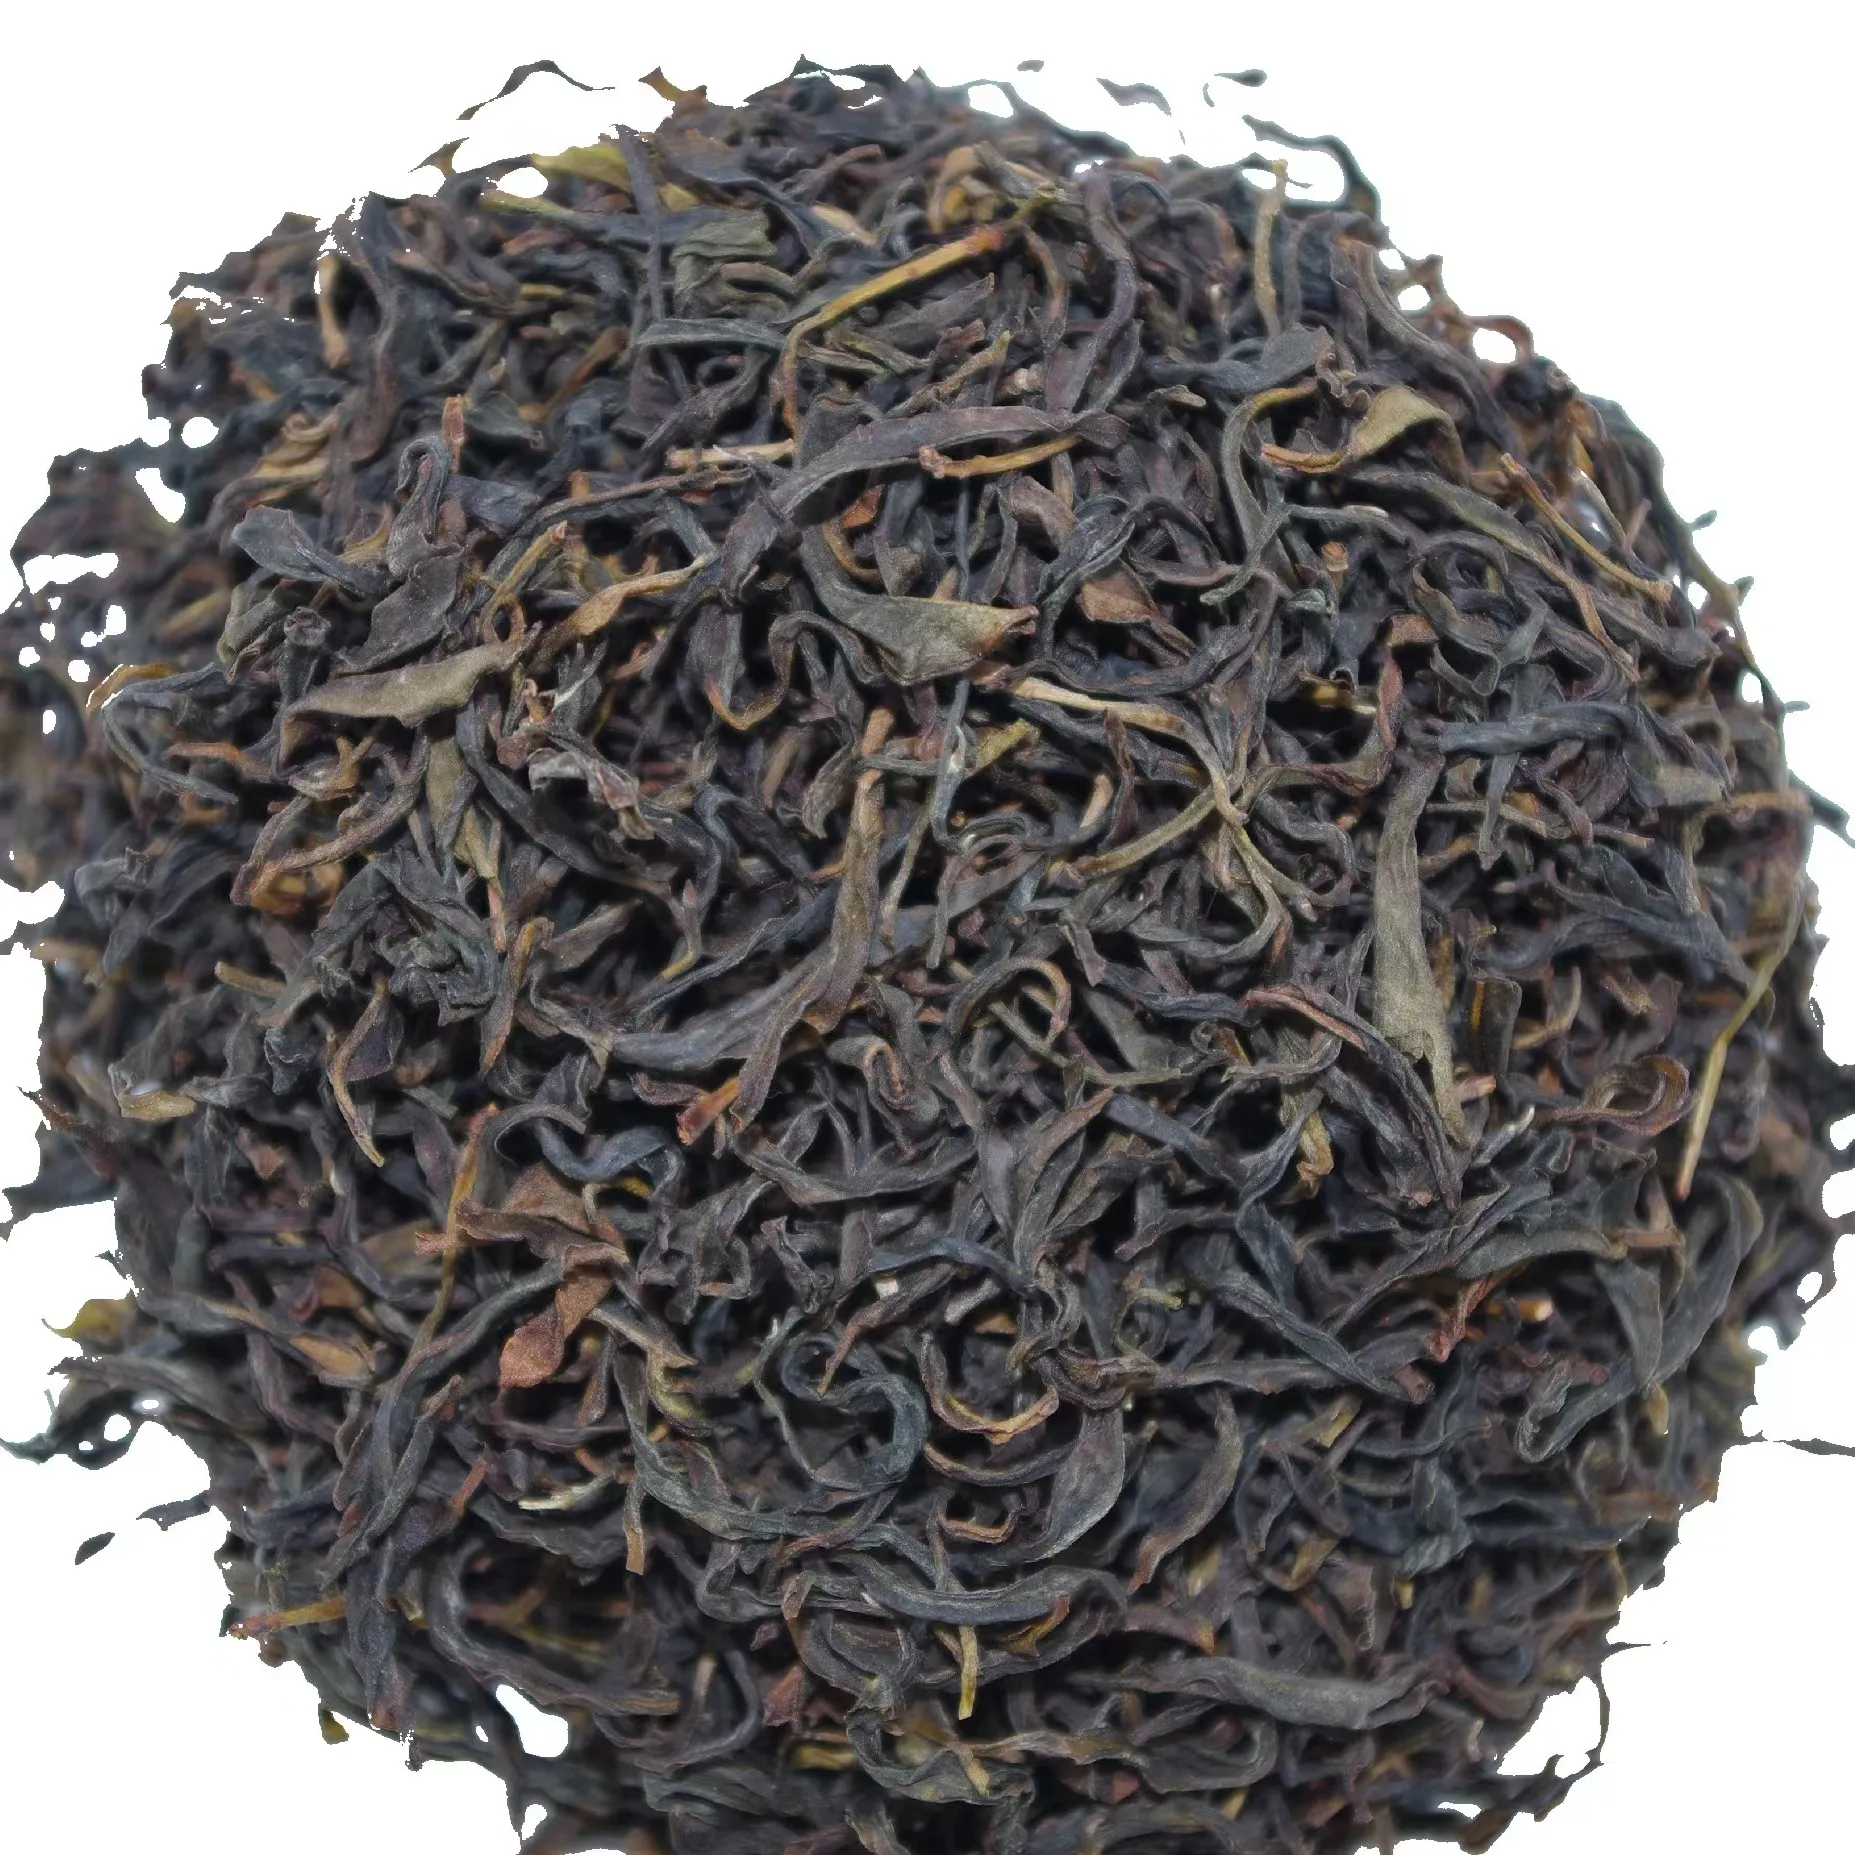 New Arrival Bulk Wholesale Tea Manufacturers Yashi Xiang Guangdong Phoenix Dan Cong Oolong Tea for Bubble Tea